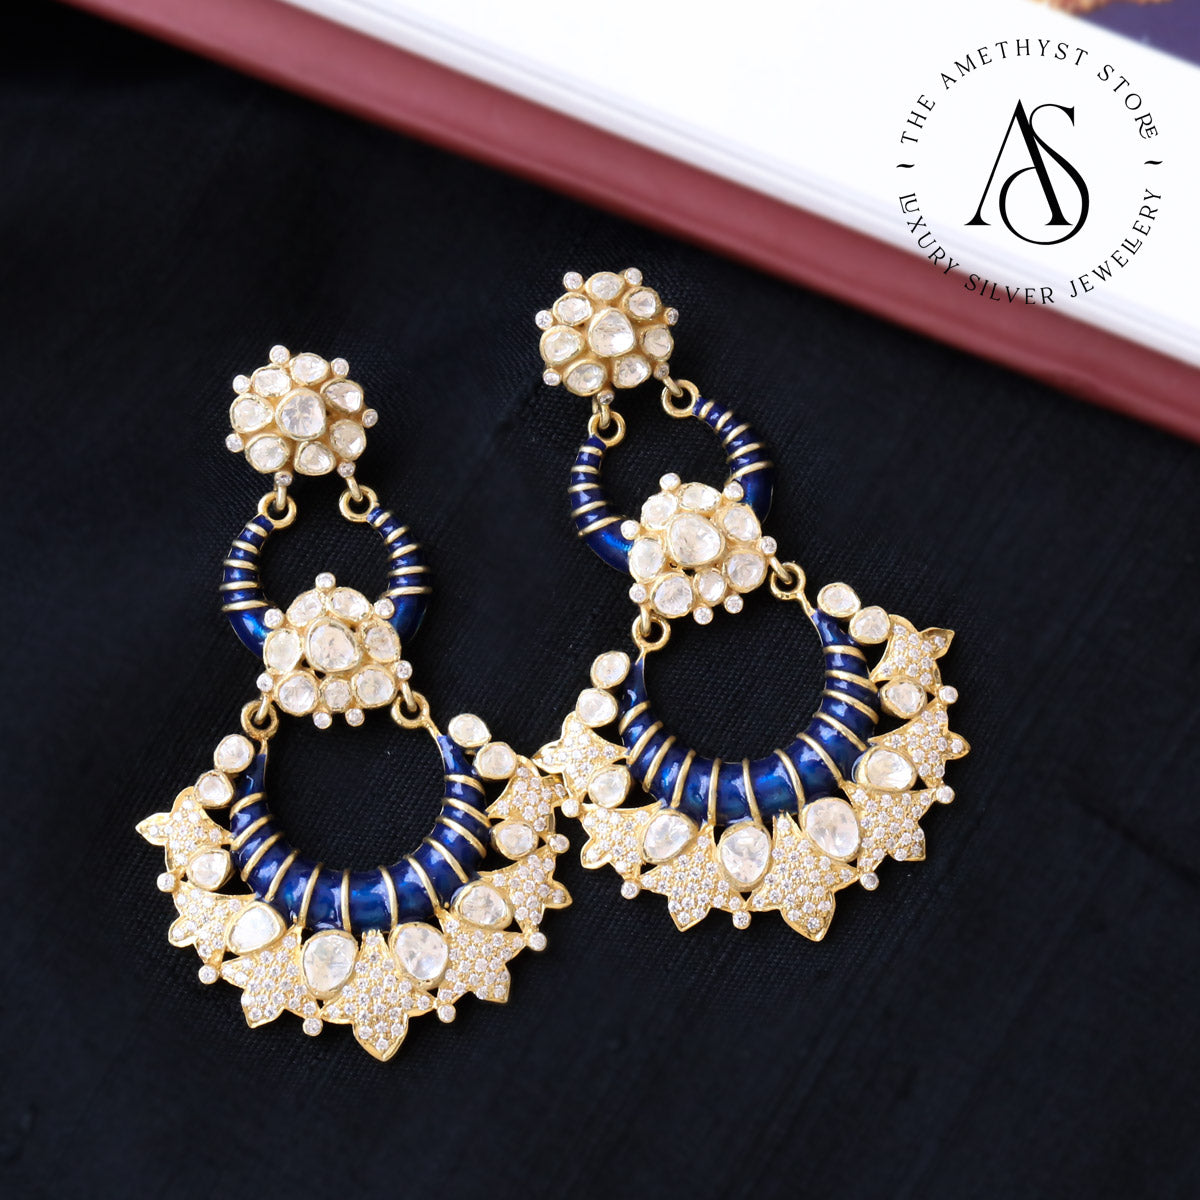 New earrings online 🖤 | Instagram